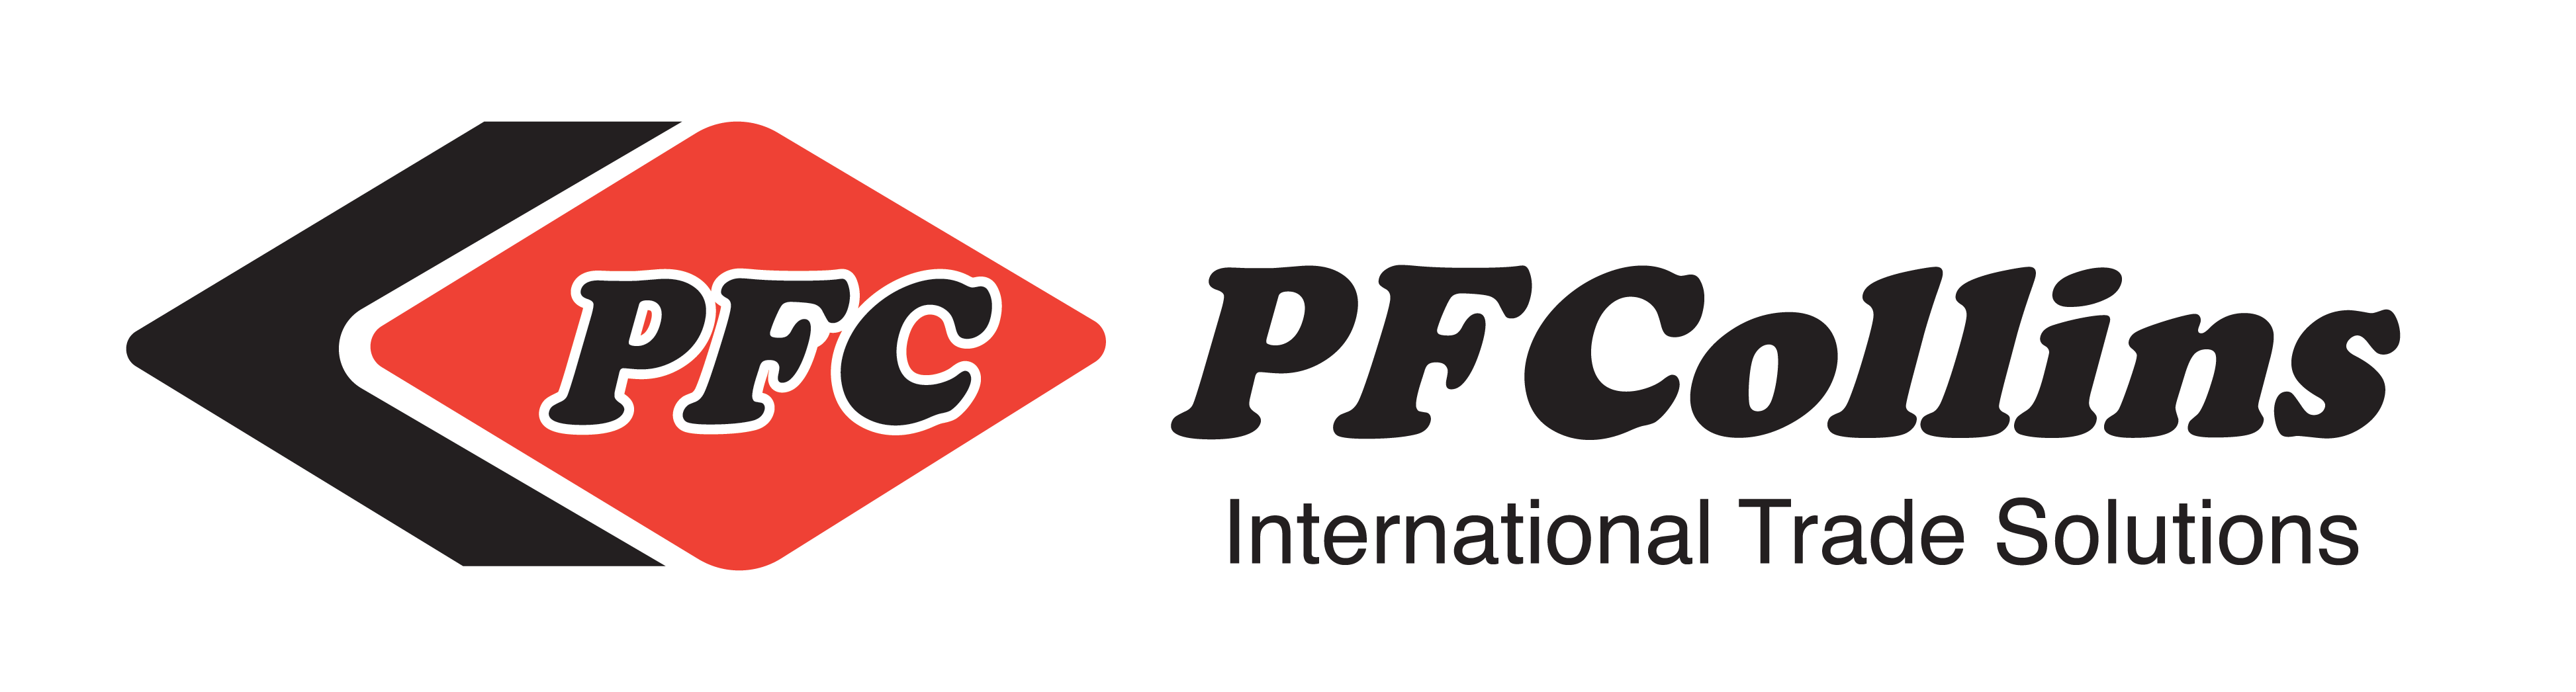 PF Collins International Trade Solutions Logo (medium)